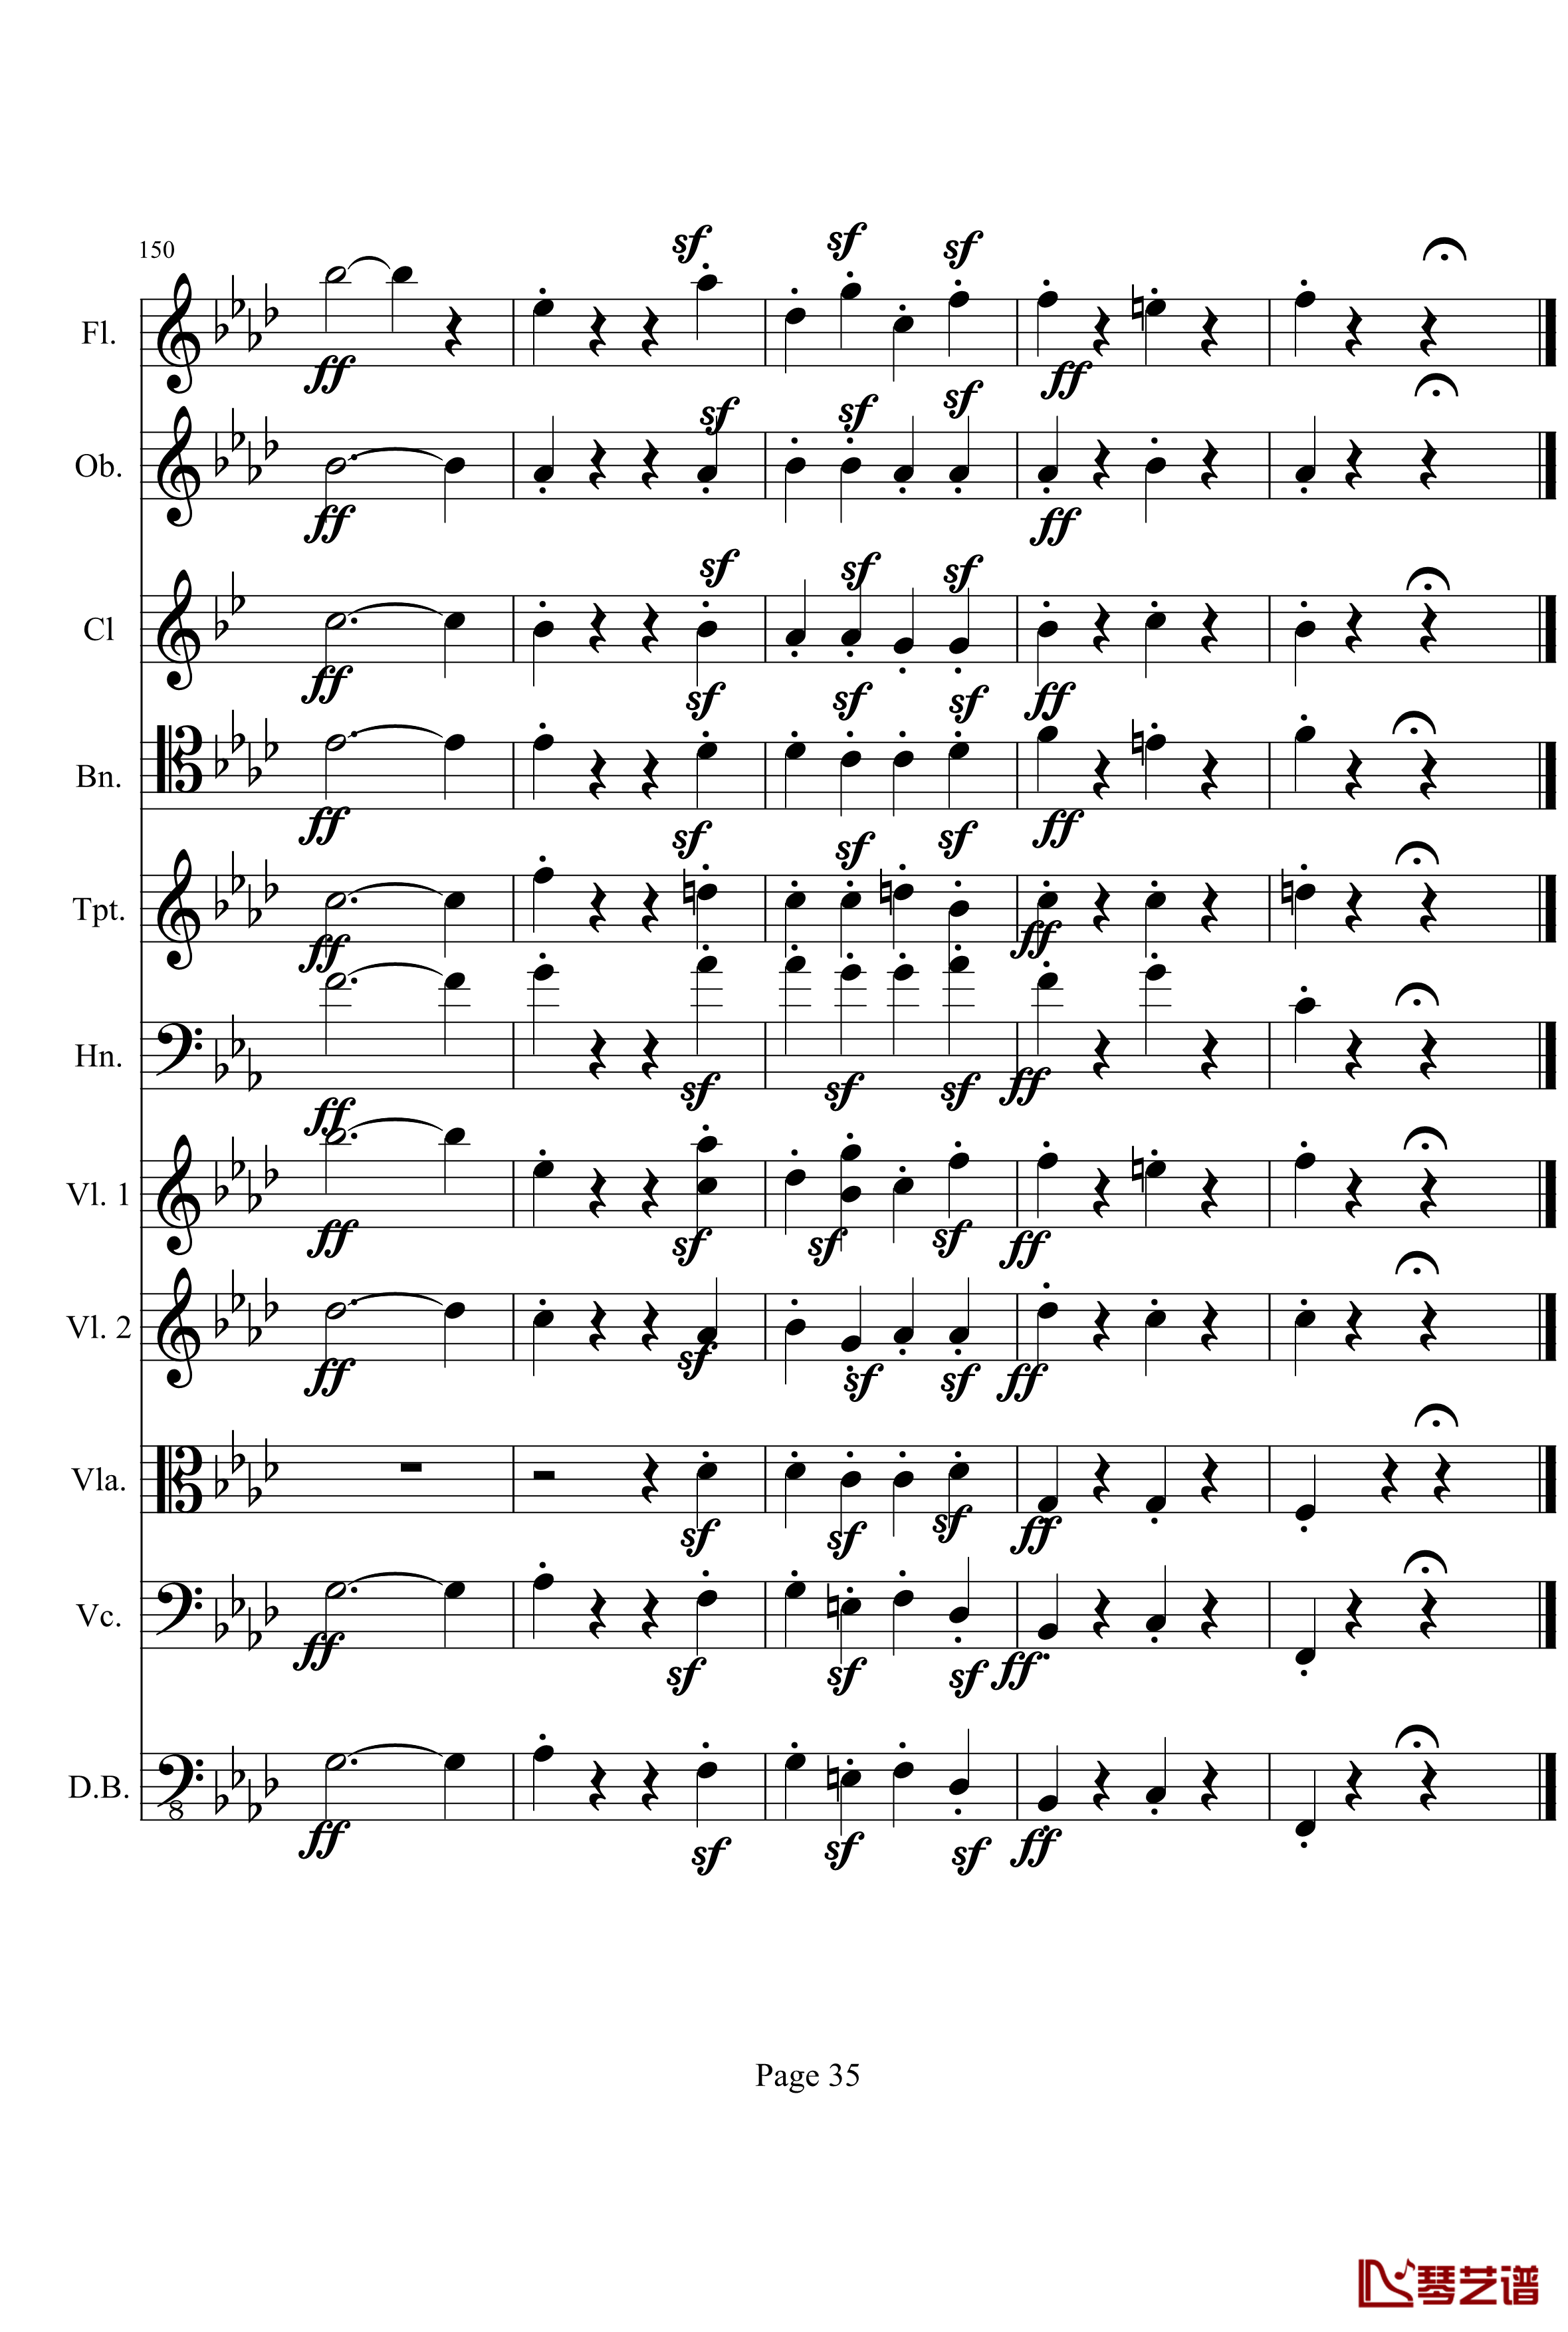 奏鸣曲之交响钢琴谱-第1首-Ⅰ-贝多芬-beethoven35